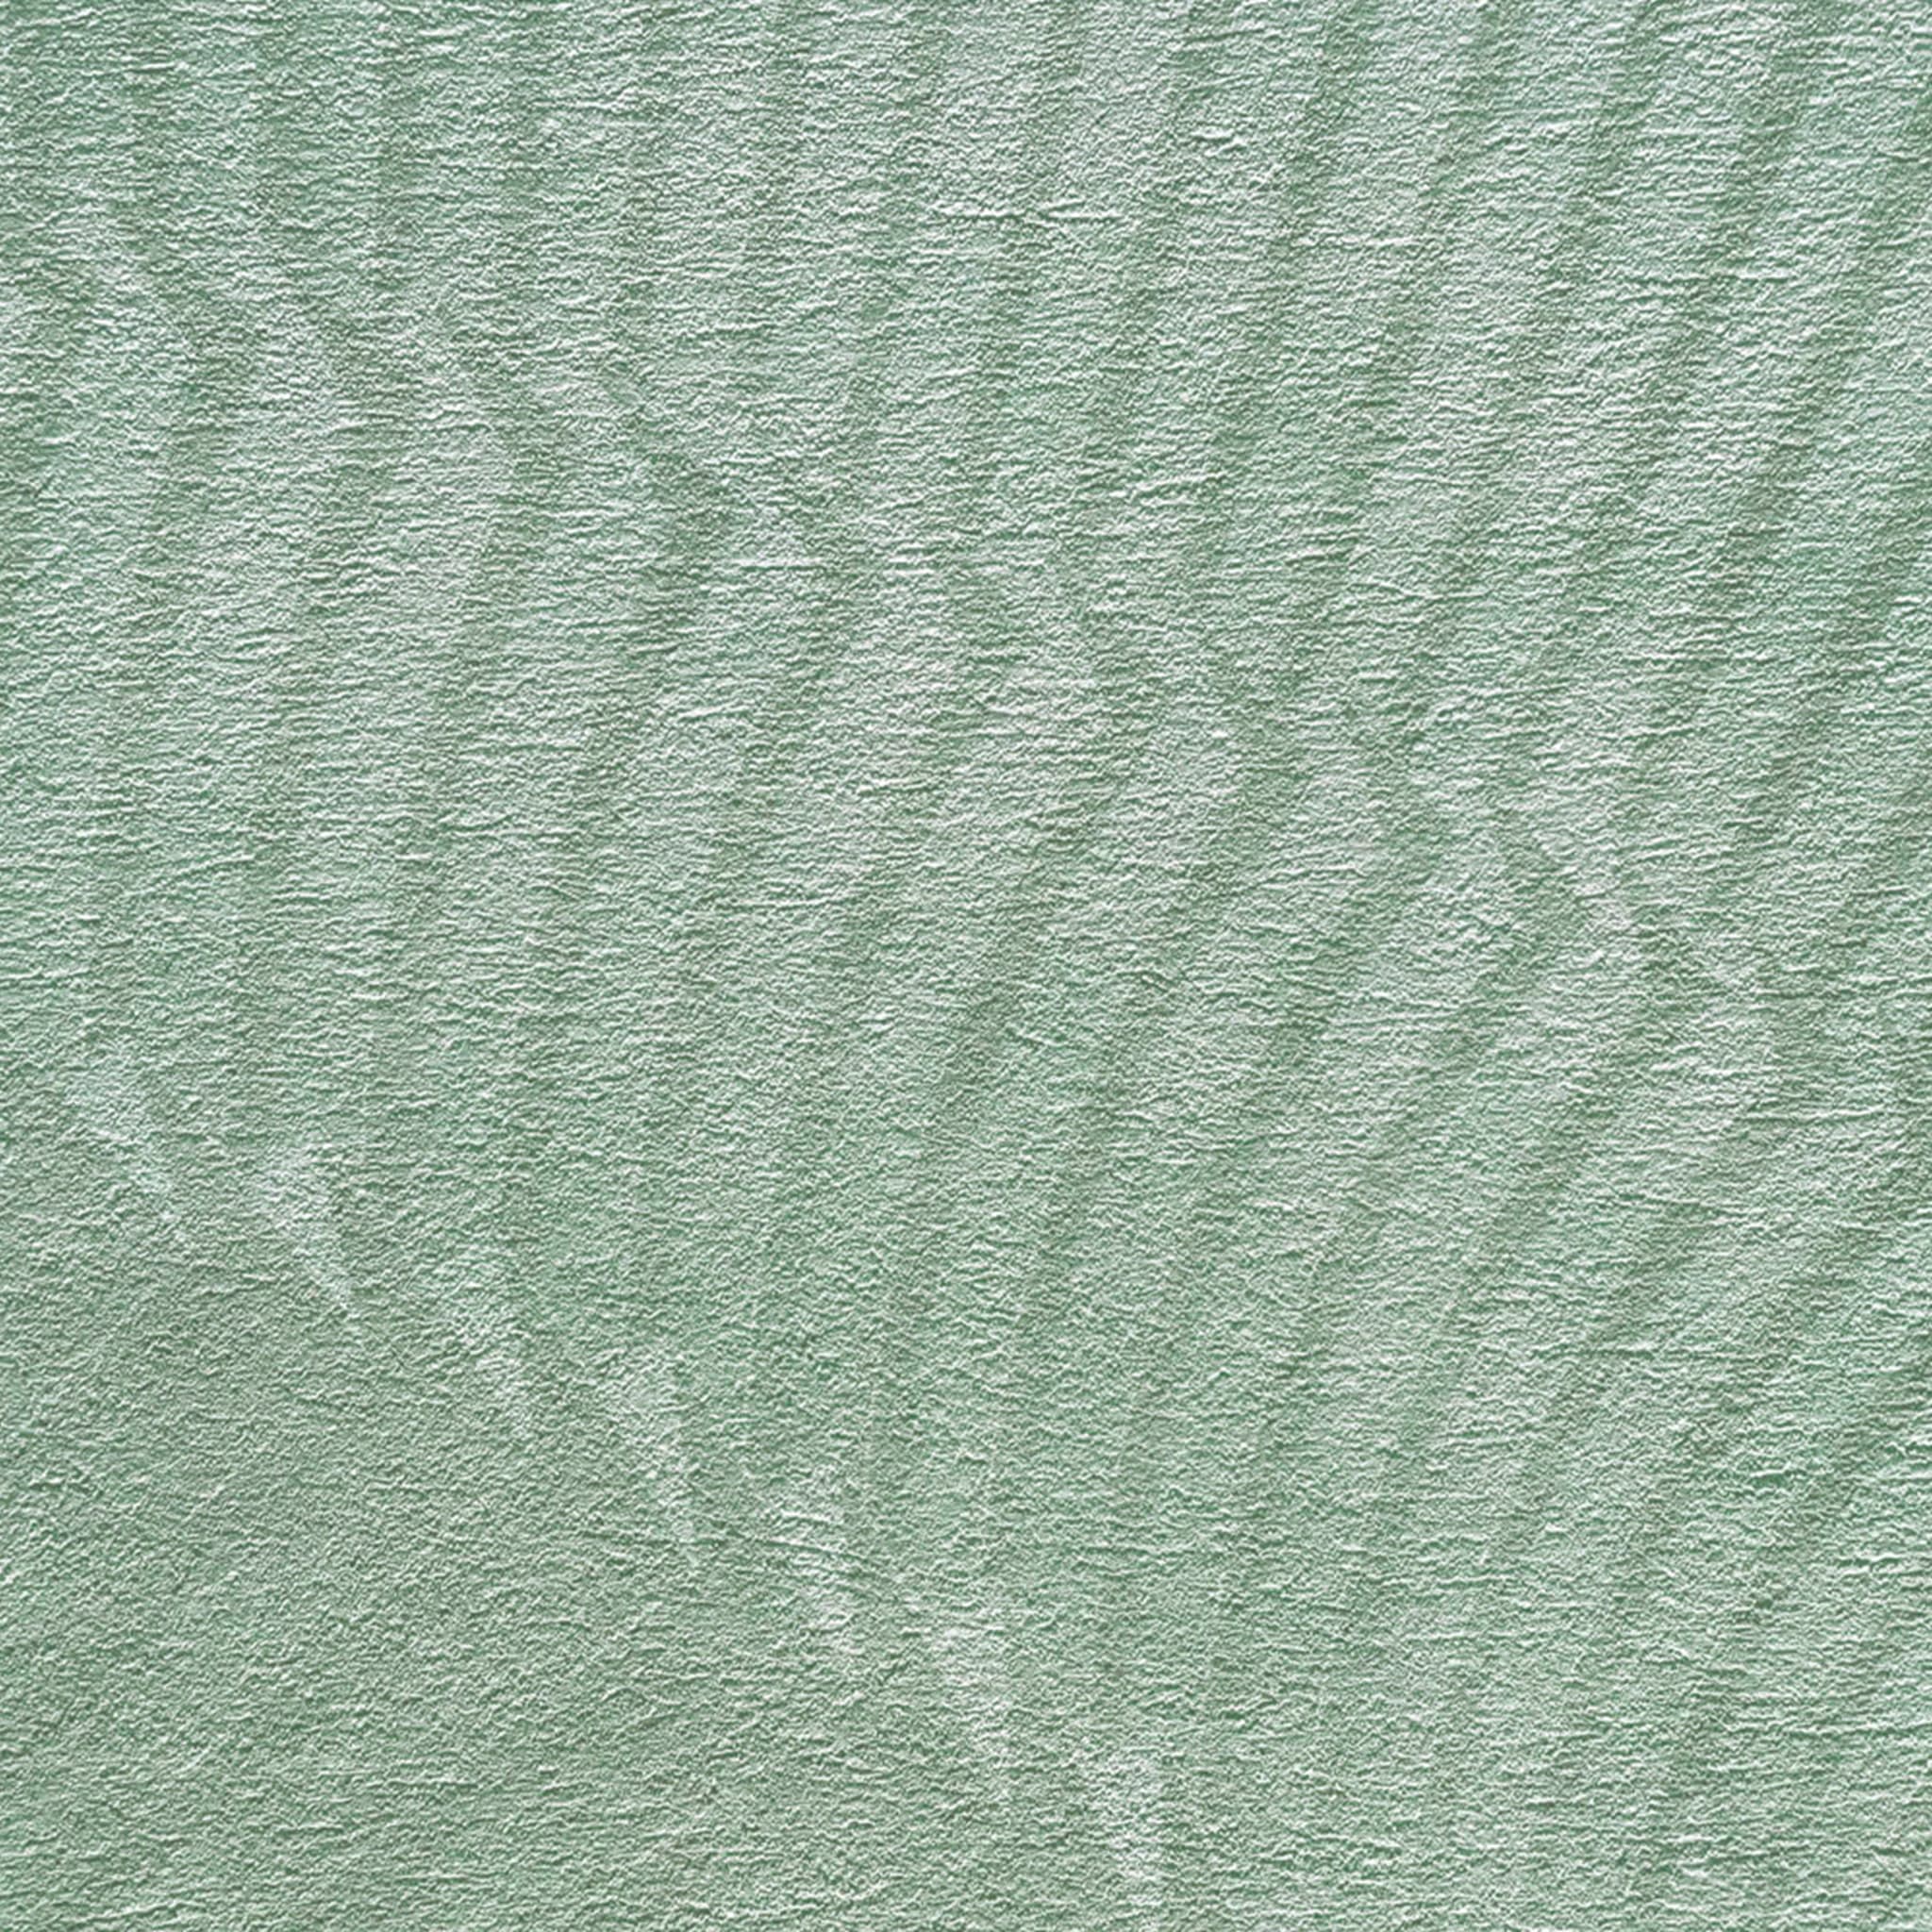 Green Fan horizontal plissé wallpaper - Alternative view 1